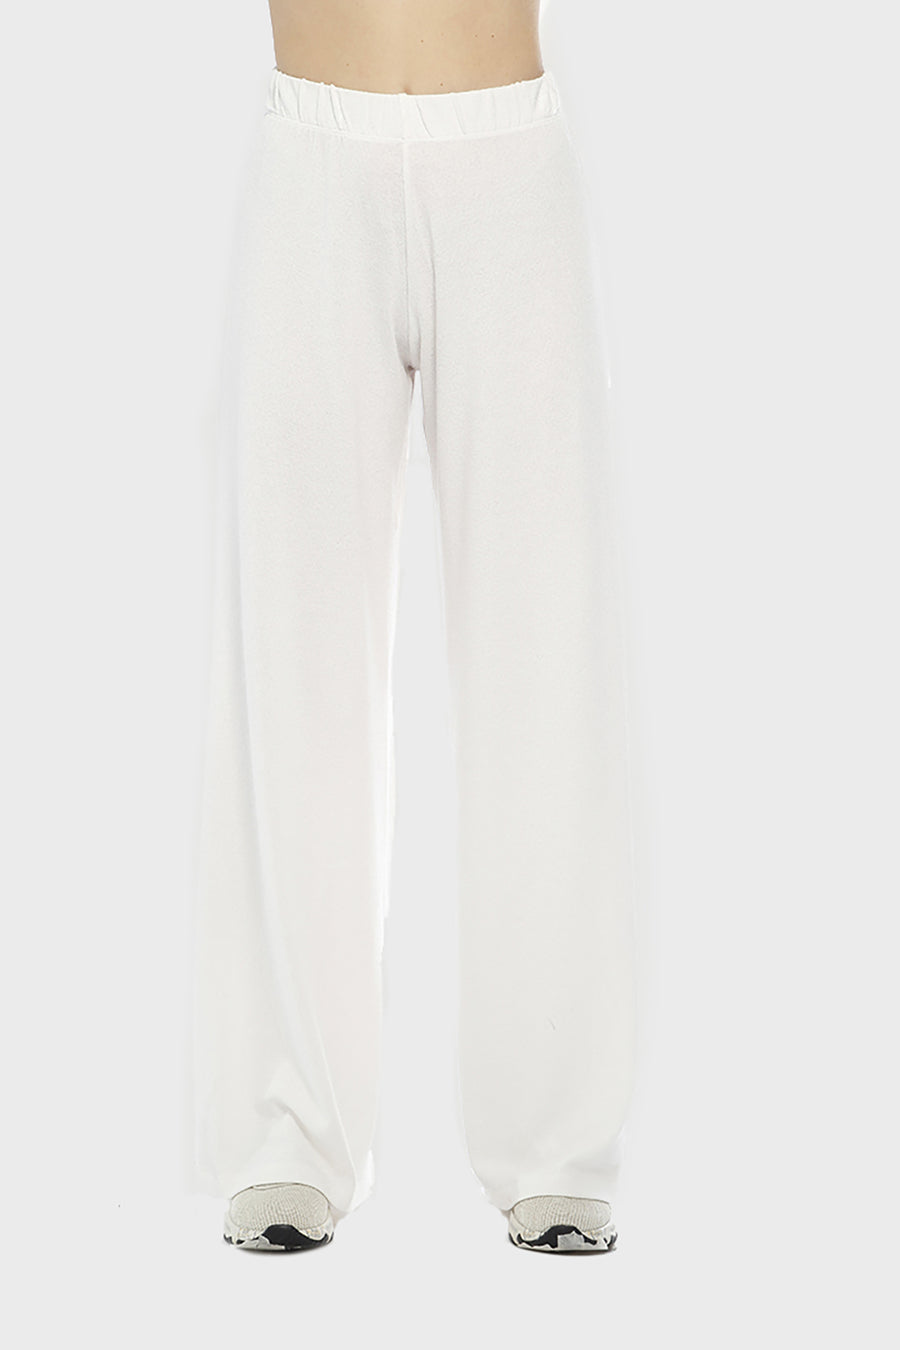 Pantalone Alisa in tessuto color talco vs7-l011